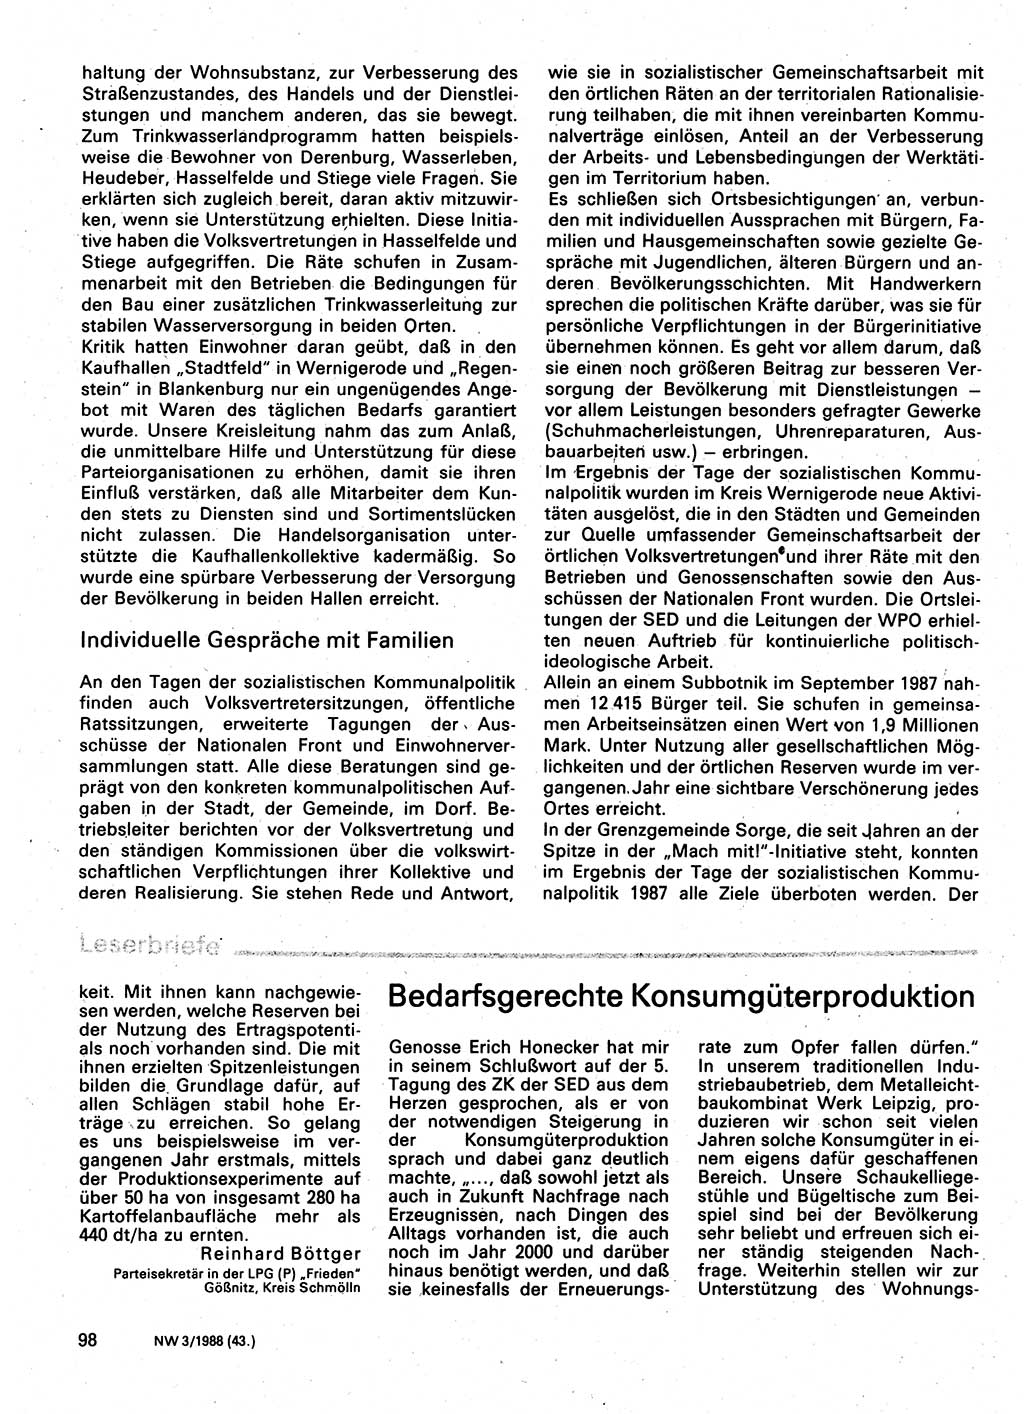 Neuer Weg (NW), Organ des Zentralkomitees (ZK) der SED (Sozialistische Einheitspartei Deutschlands) für Fragen des Parteilebens, 43. Jahrgang [Deutsche Demokratische Republik (DDR)] 1988, Seite 98 (NW ZK SED DDR 1988, S. 98)